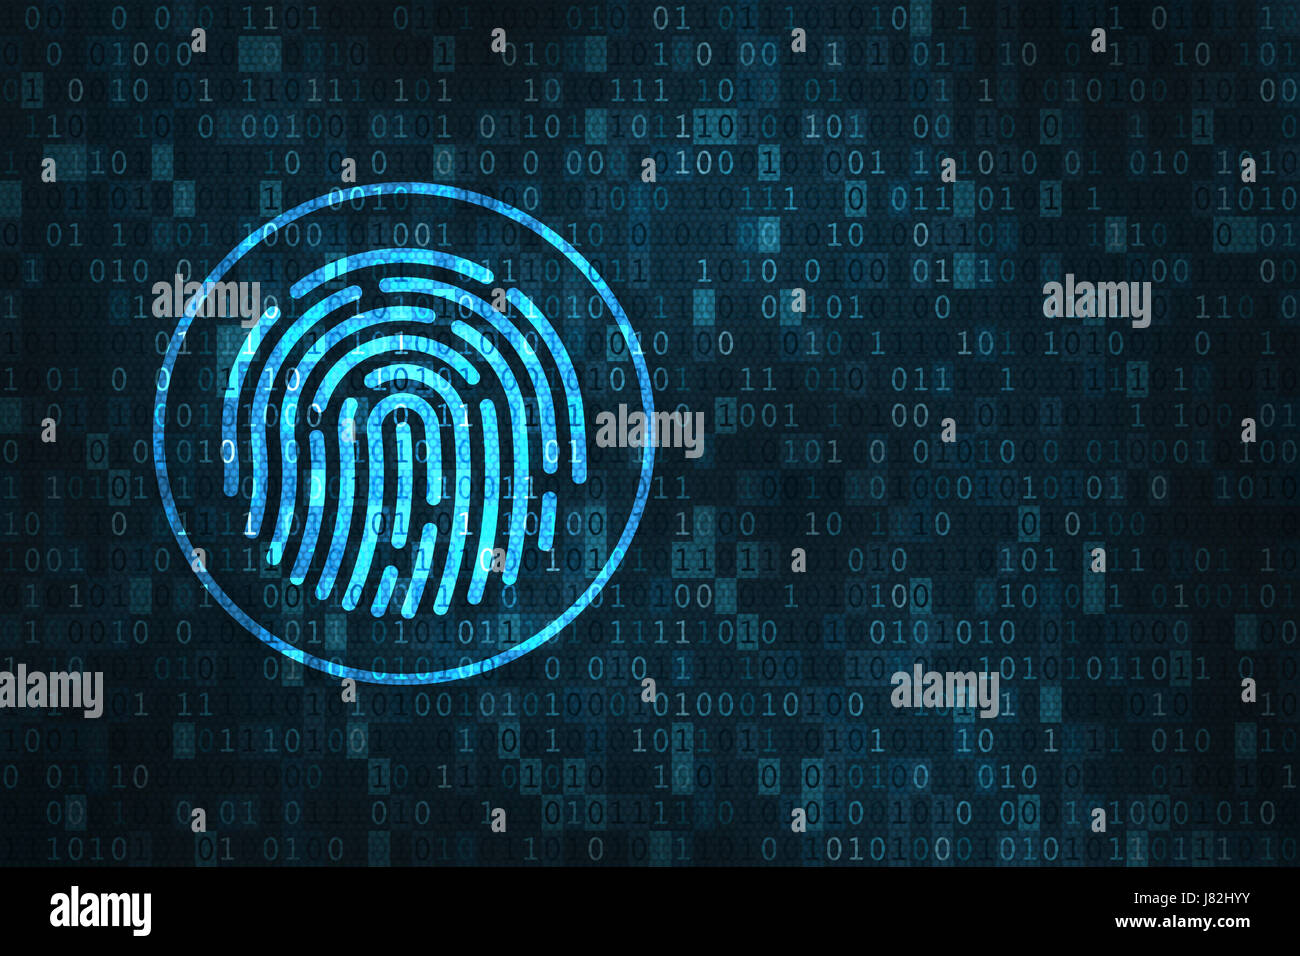 Digitaler Fingerabdruck Sicherheitskonzept mit Ikone der Finger Scannen über Binärziffern Hintergrund Stockfoto